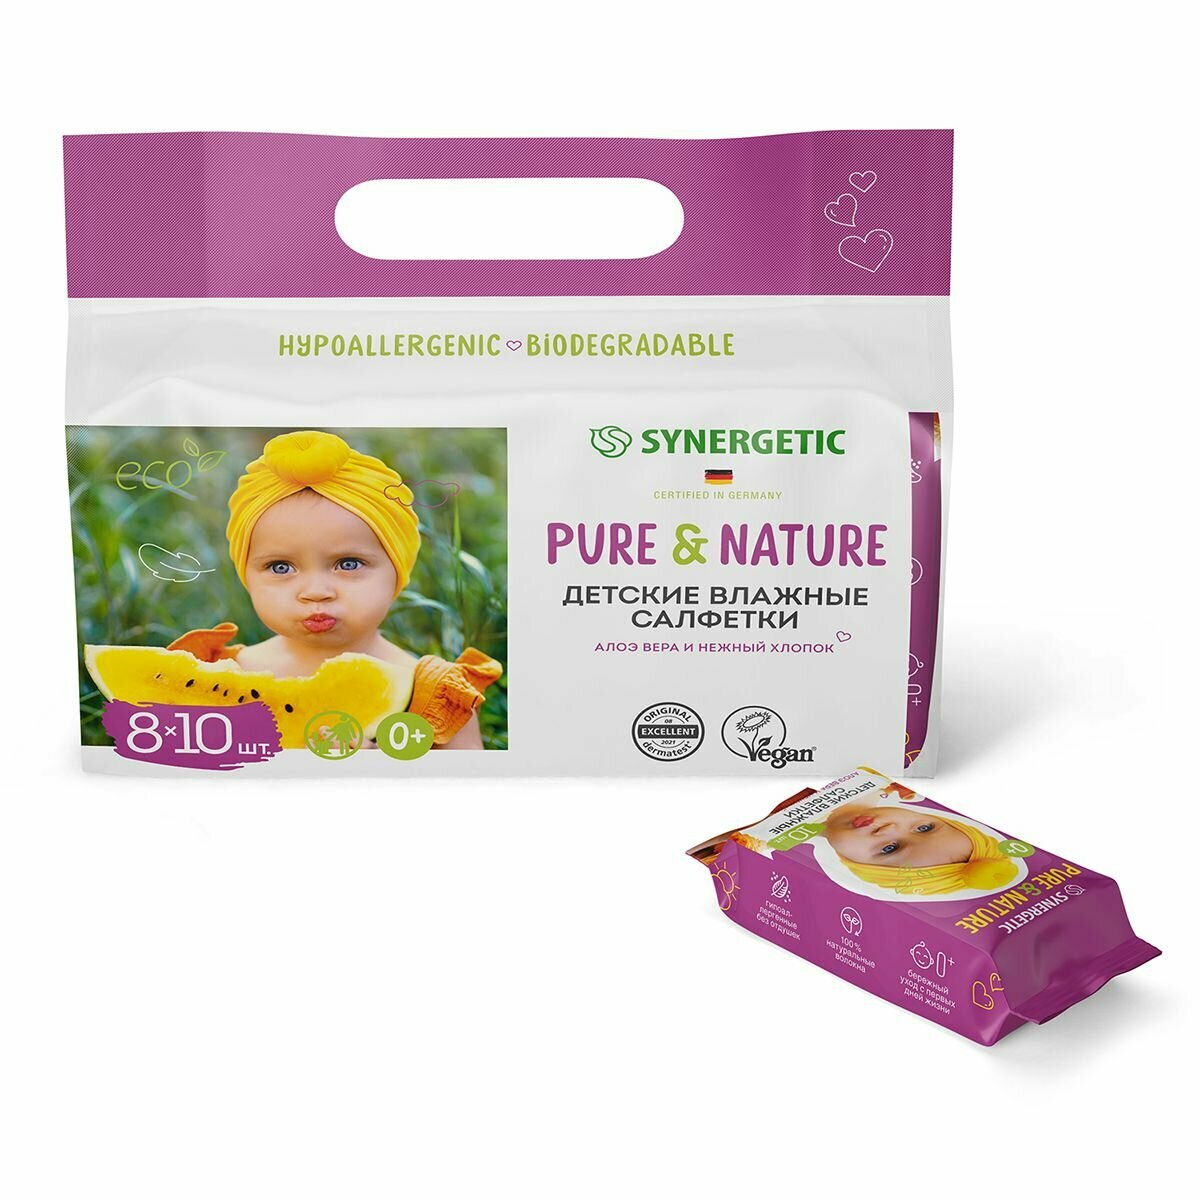 Детские влажные салфетки 0+ SYNERGETIC Pure&Nature "Алоэ вера и нежный хлопок" без отдушек 8 упаковок по 10 штук